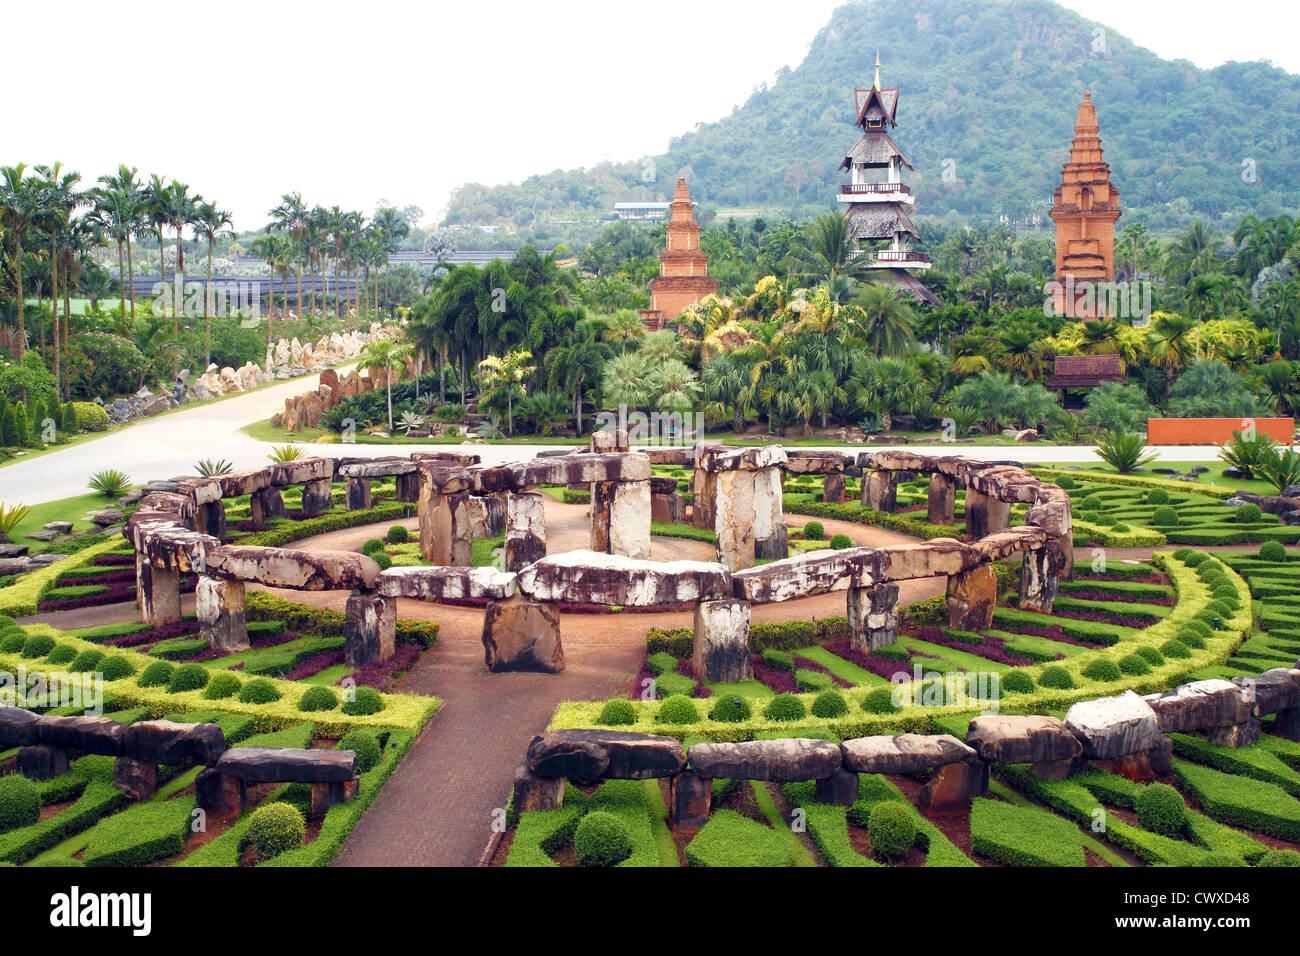 Nong Nooch parc en Thaïlande, des arbustes poussent dans les figures géométriques Banque D'Images